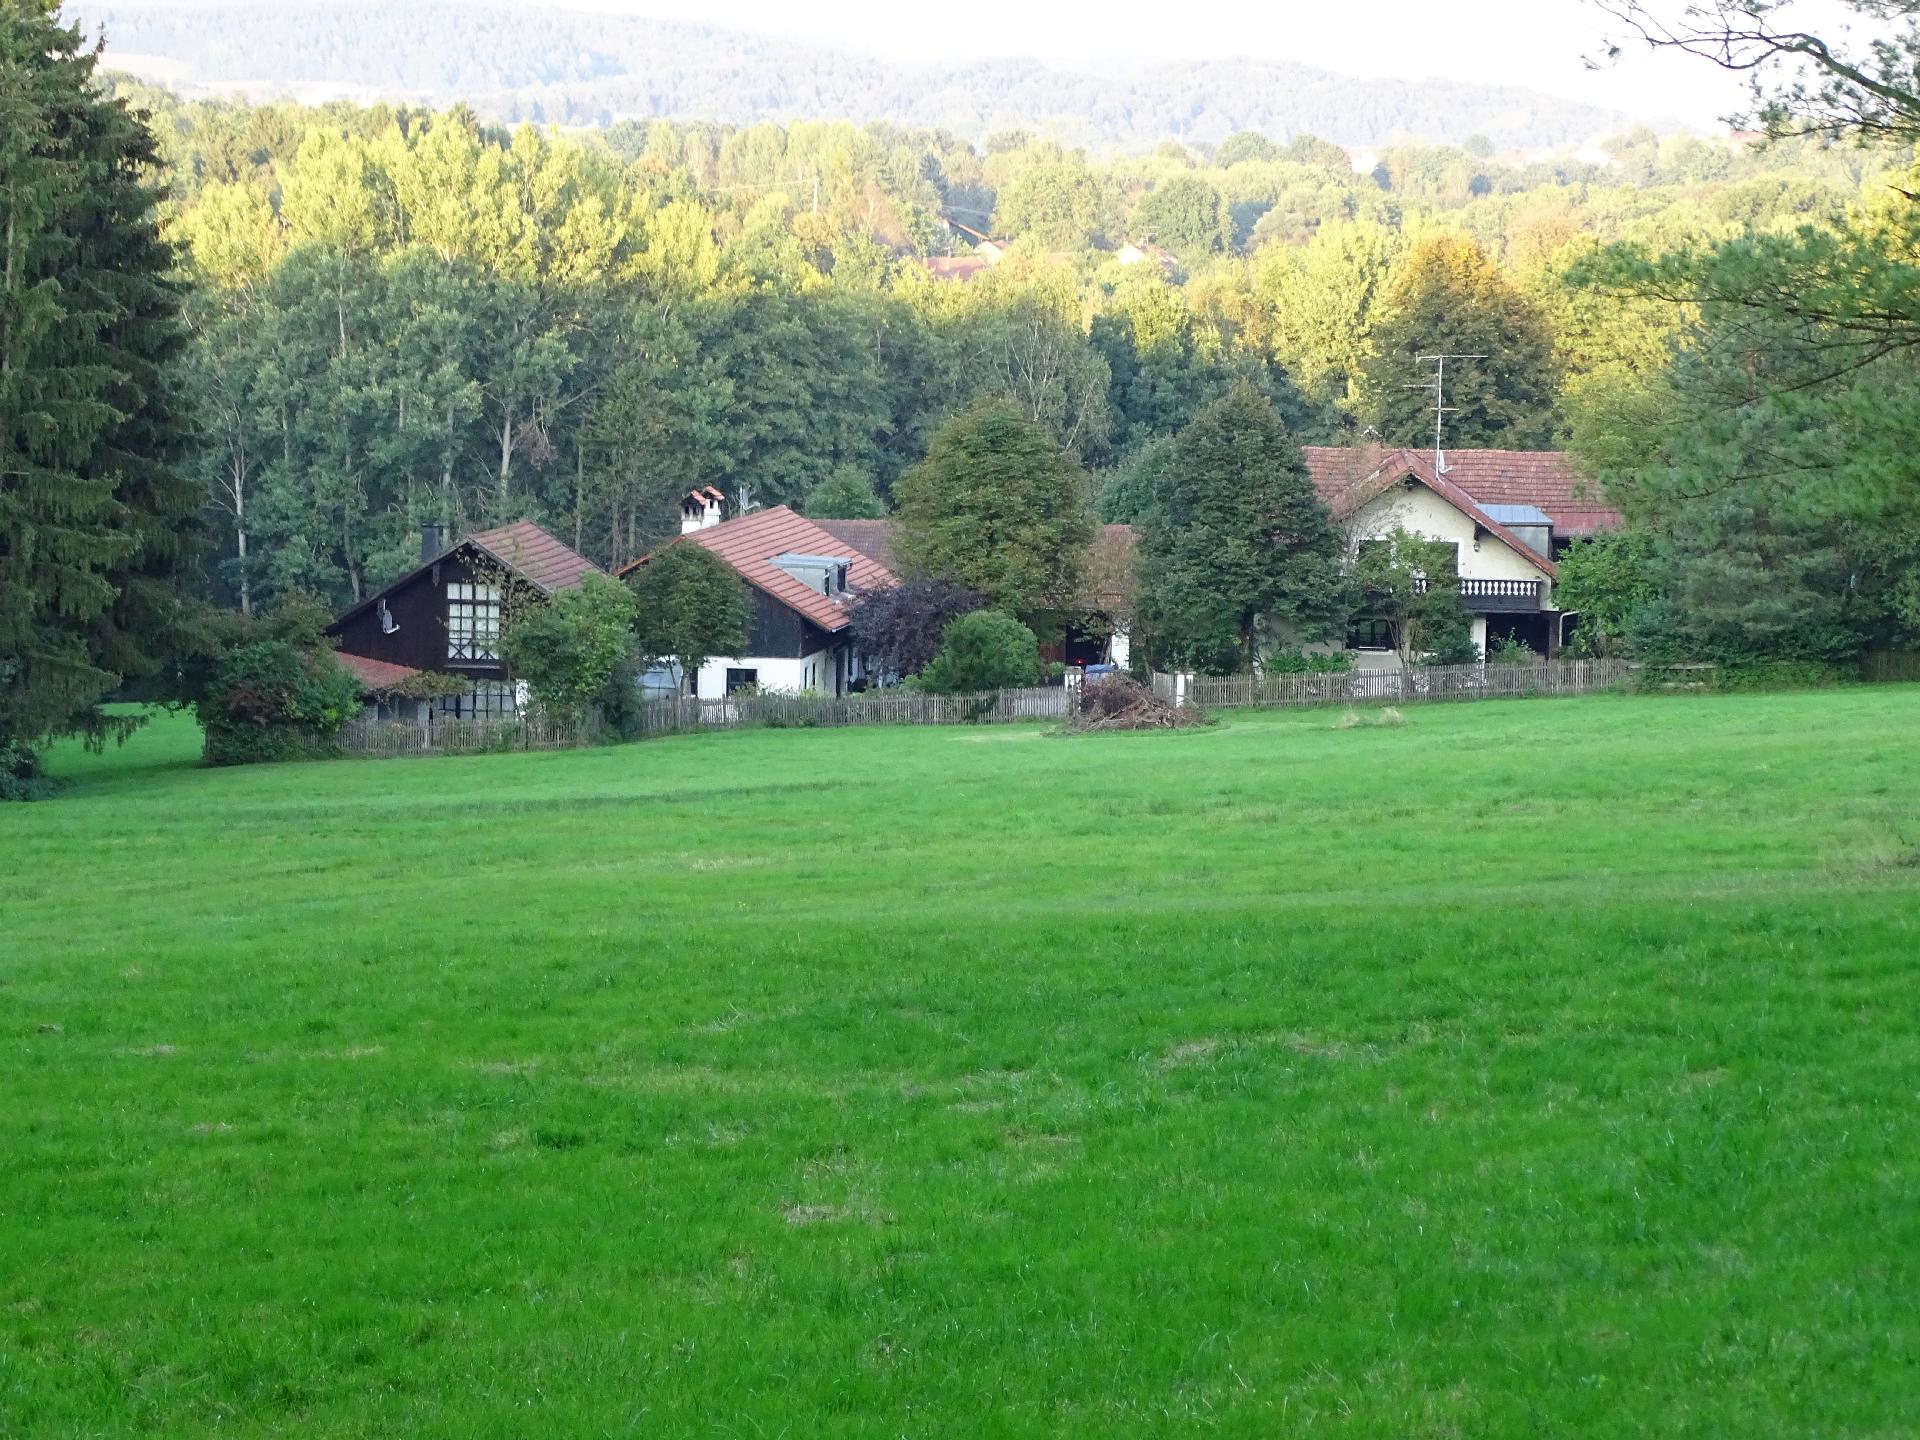 Ferienhaus für drei Personen mit Terrasse und Ferienhaus in Deutschland